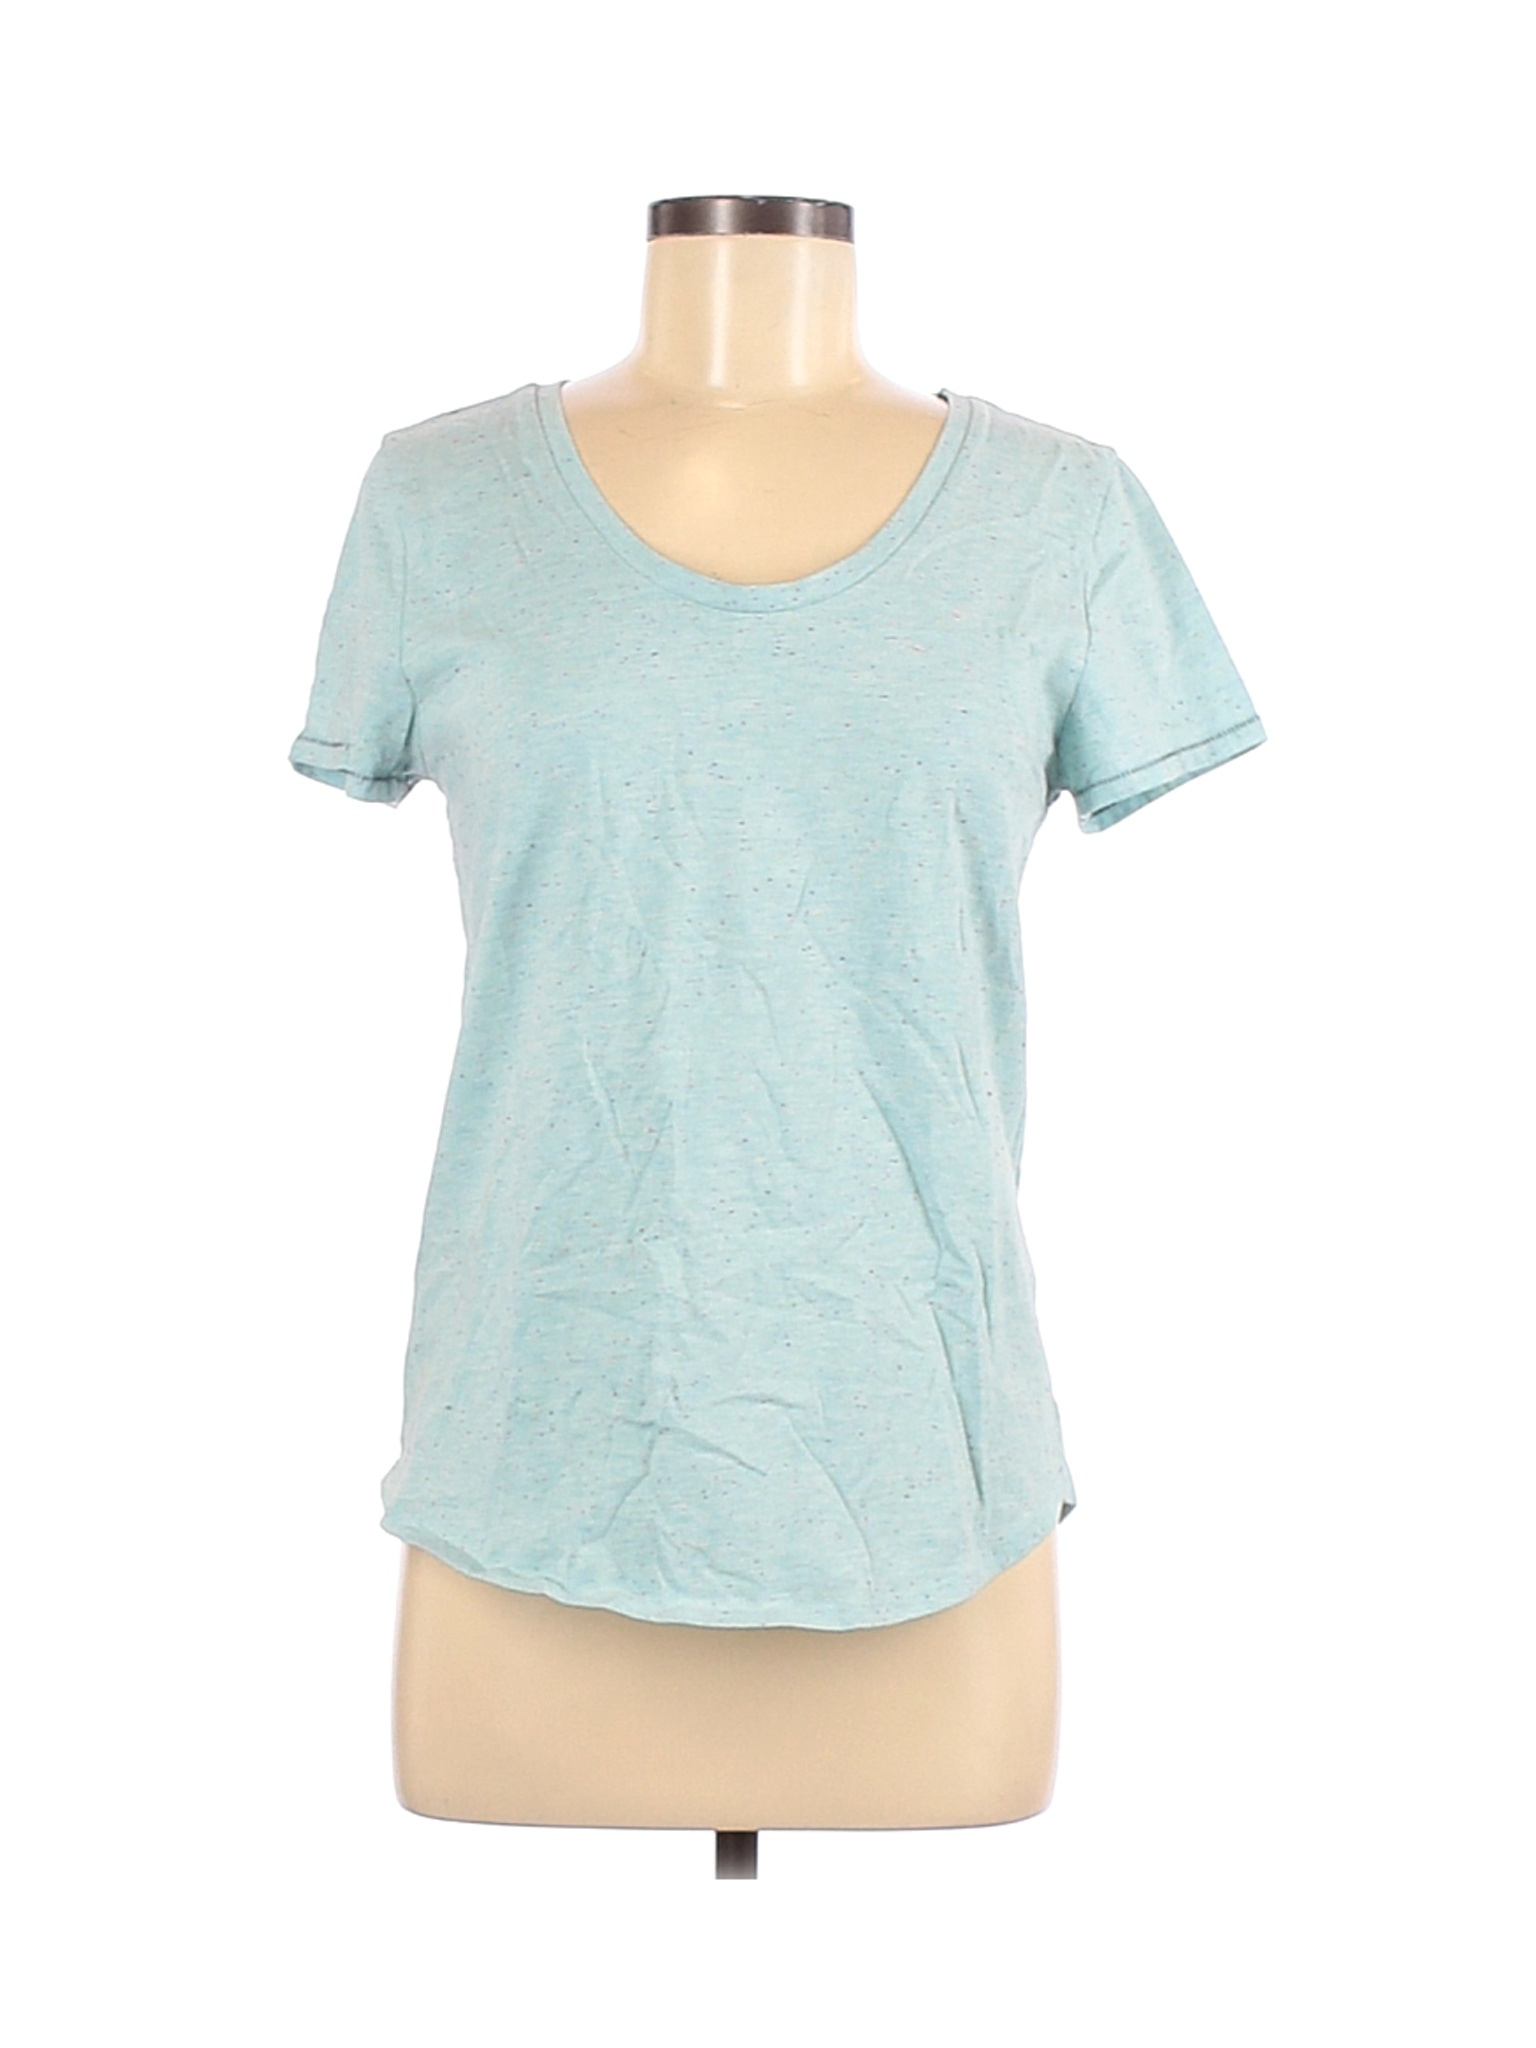 Ann Taylor LOFT Outlet Women Blue Short Sleeve T-Shirt M | eBay